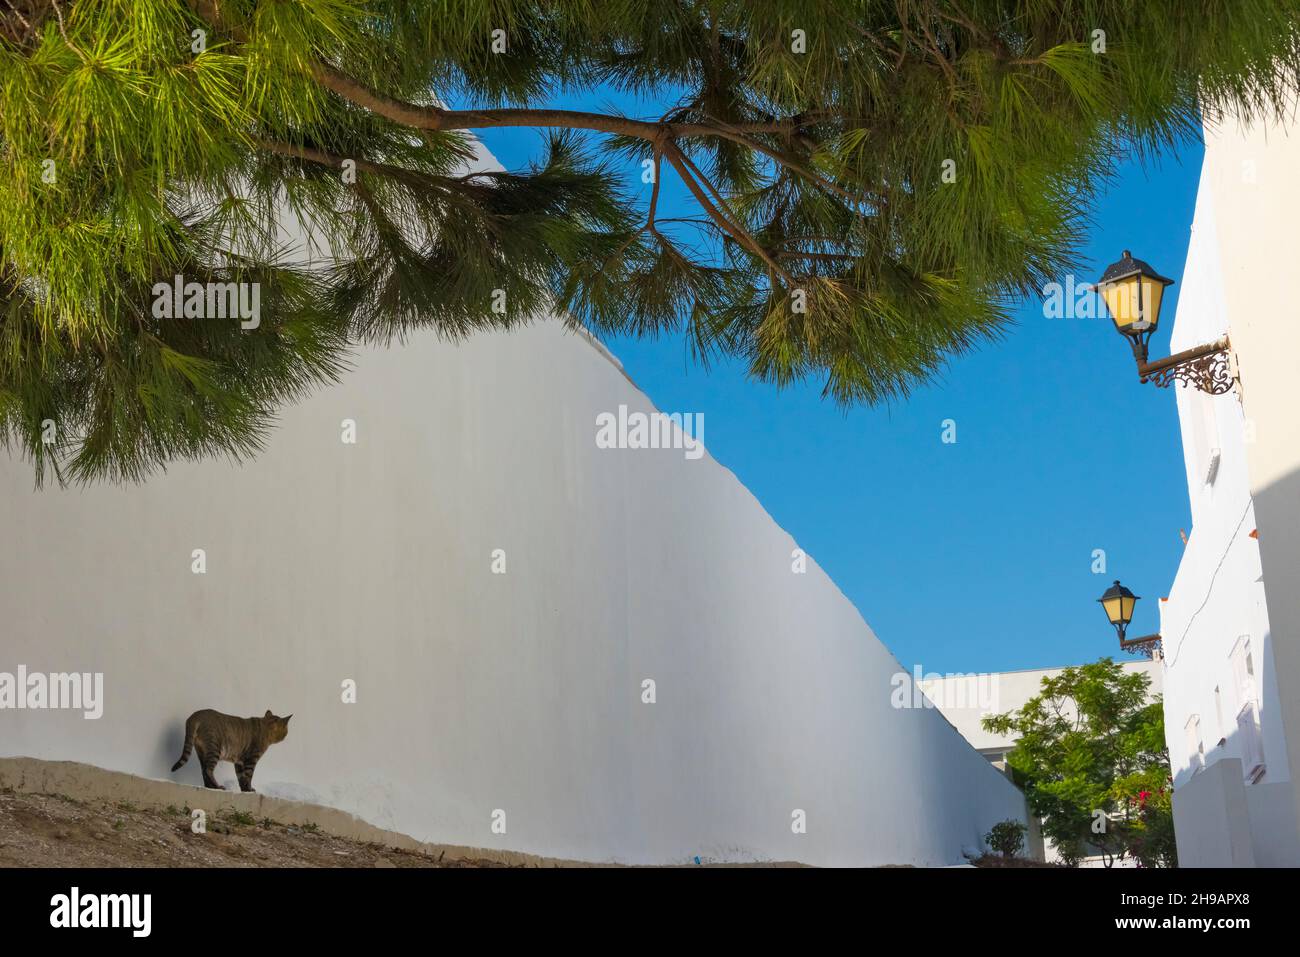 A cat by a white house under a big tree, Vejer de la Frontera, Cadiz Province, Andalusia Autonomous Community, Spain Stock Photo